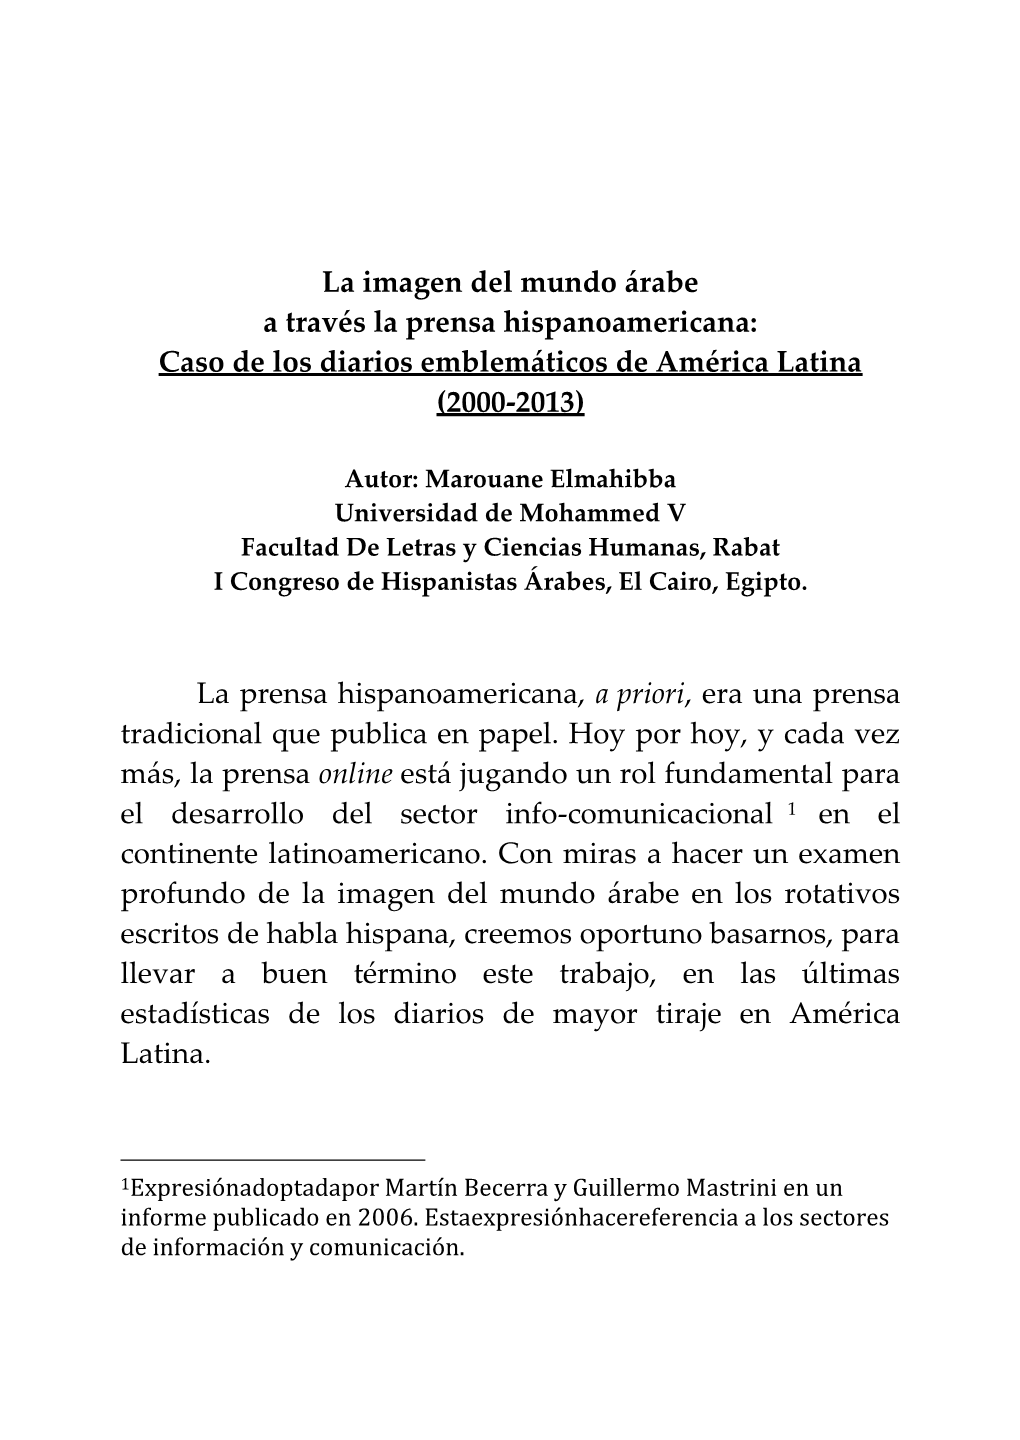 La Imagen Del Mundo Árabe a Través La Prensa Hispanoamericana: Caso De Los Diarios Emblemáticos De América Latina (2000-2013)